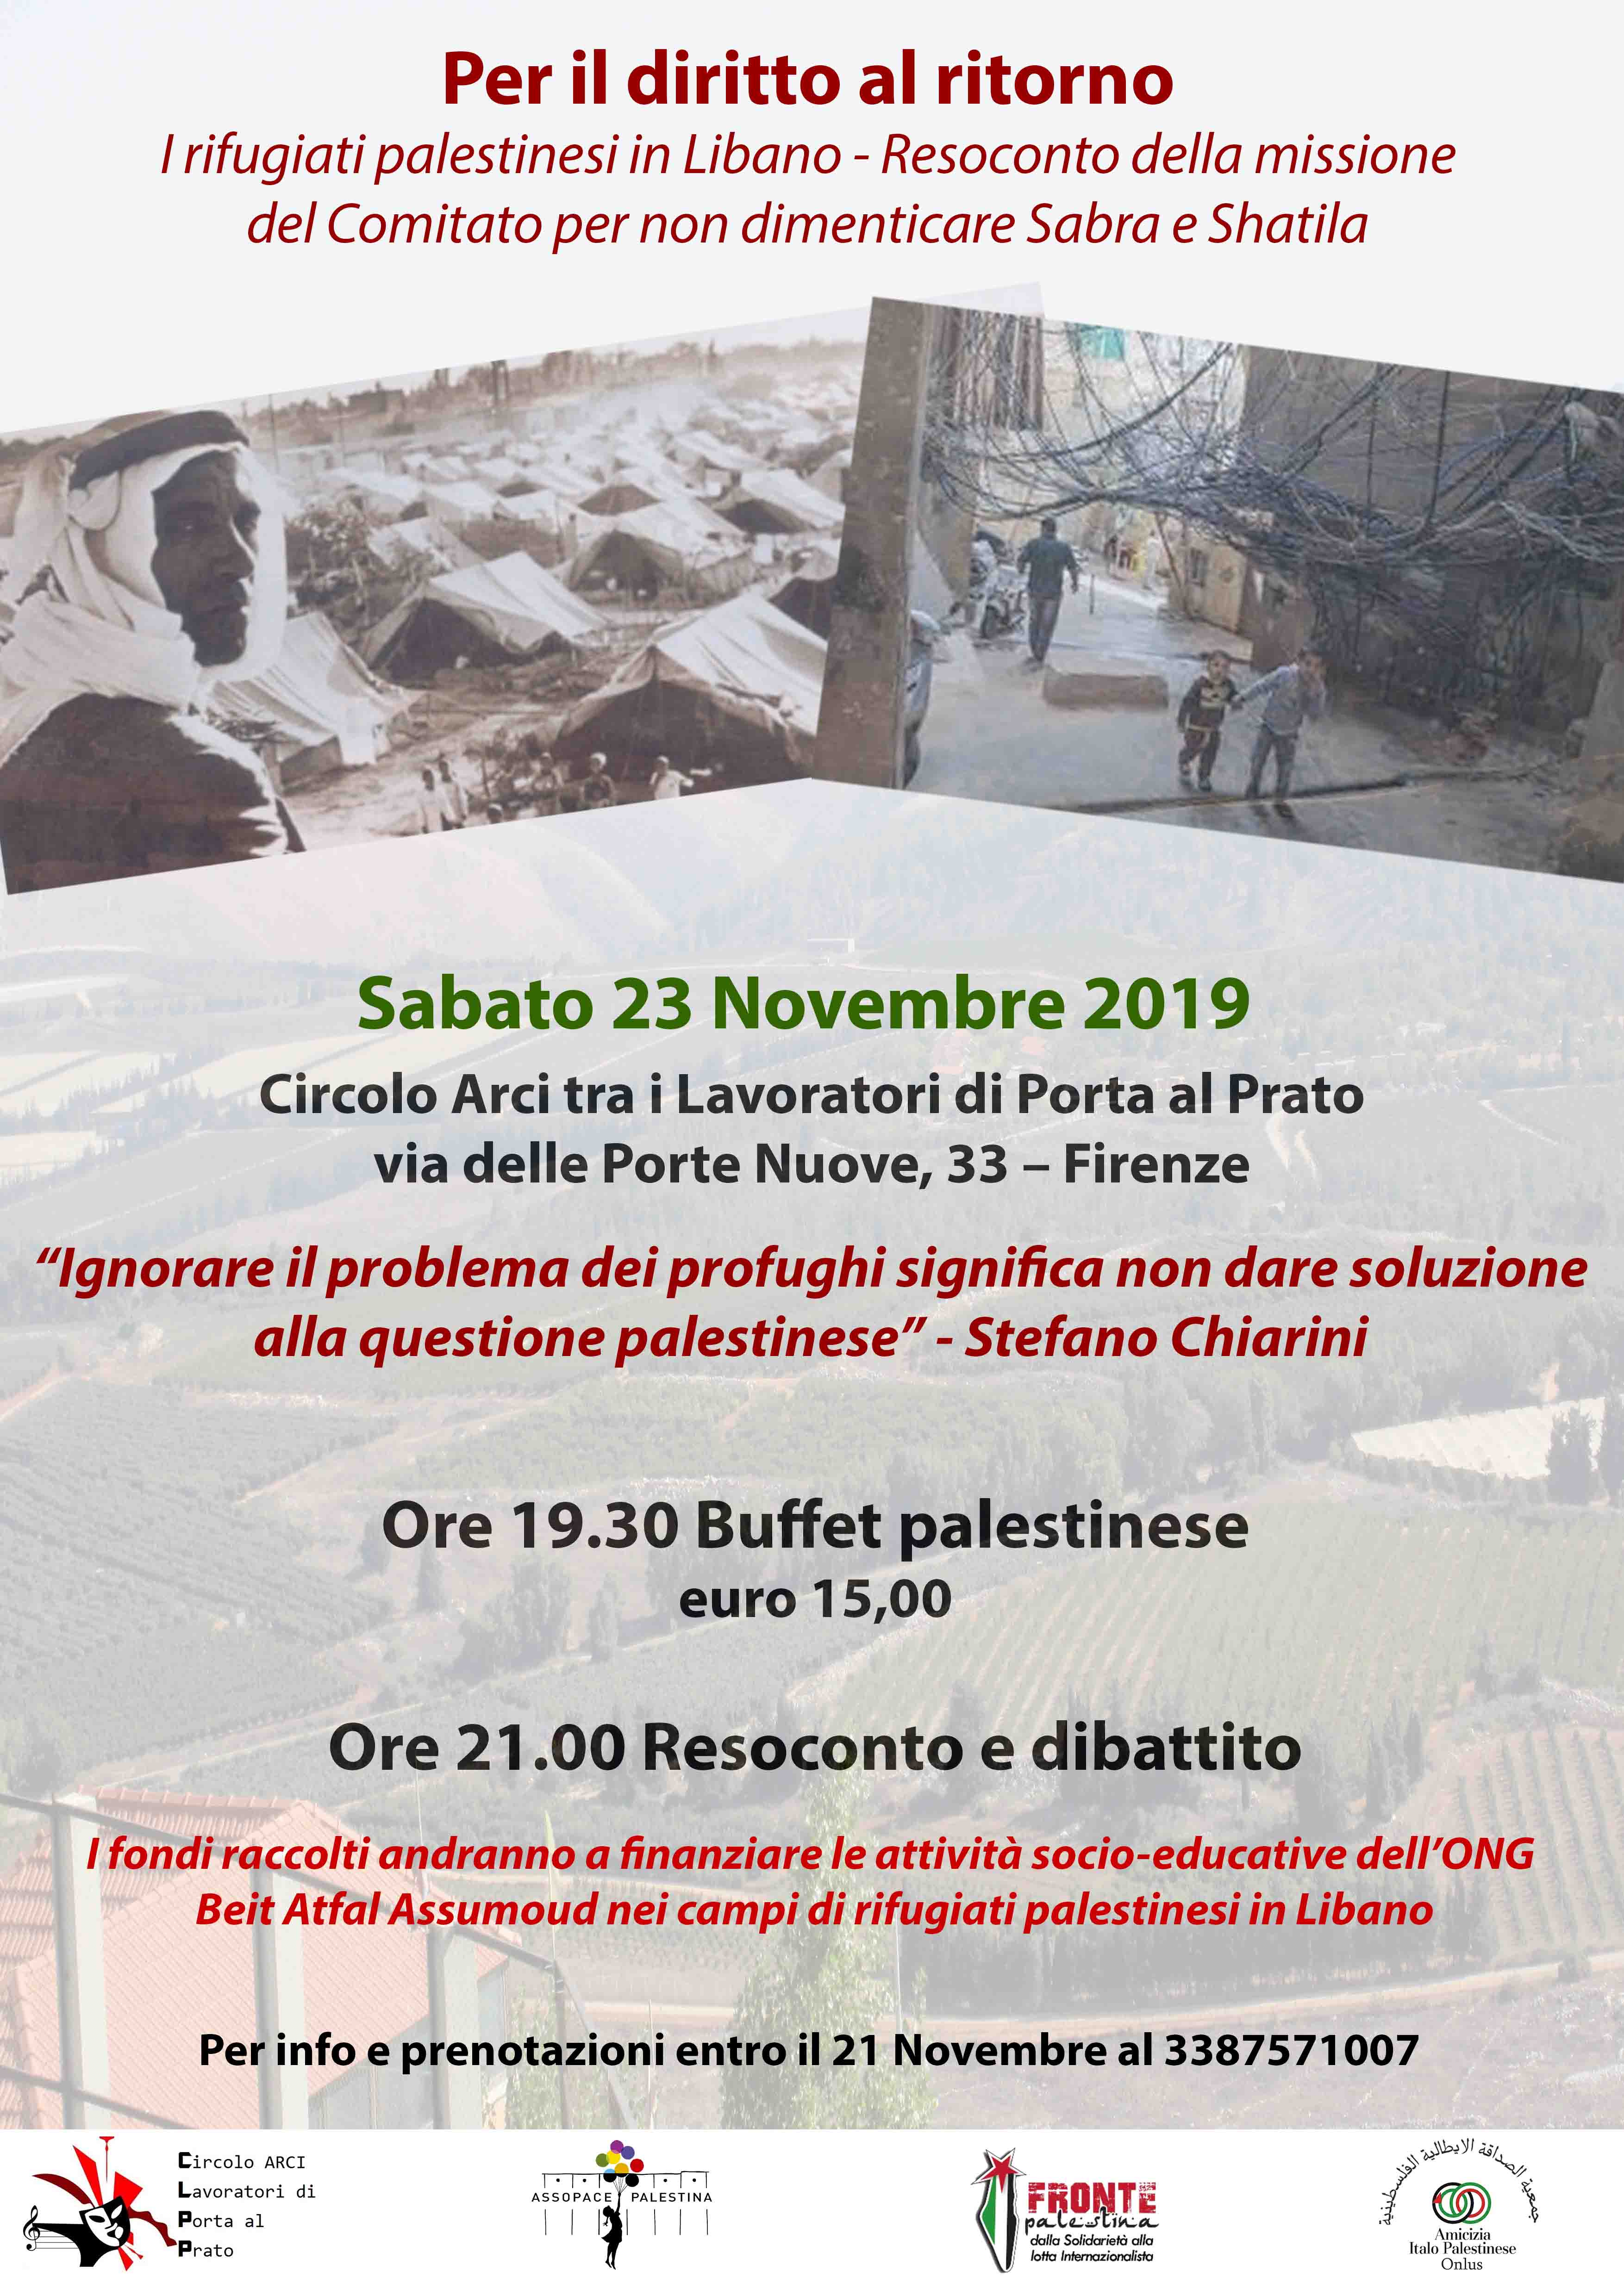 Firenze, 23 novembre: Discussione sul diritto al ritorno dei Palestinesi